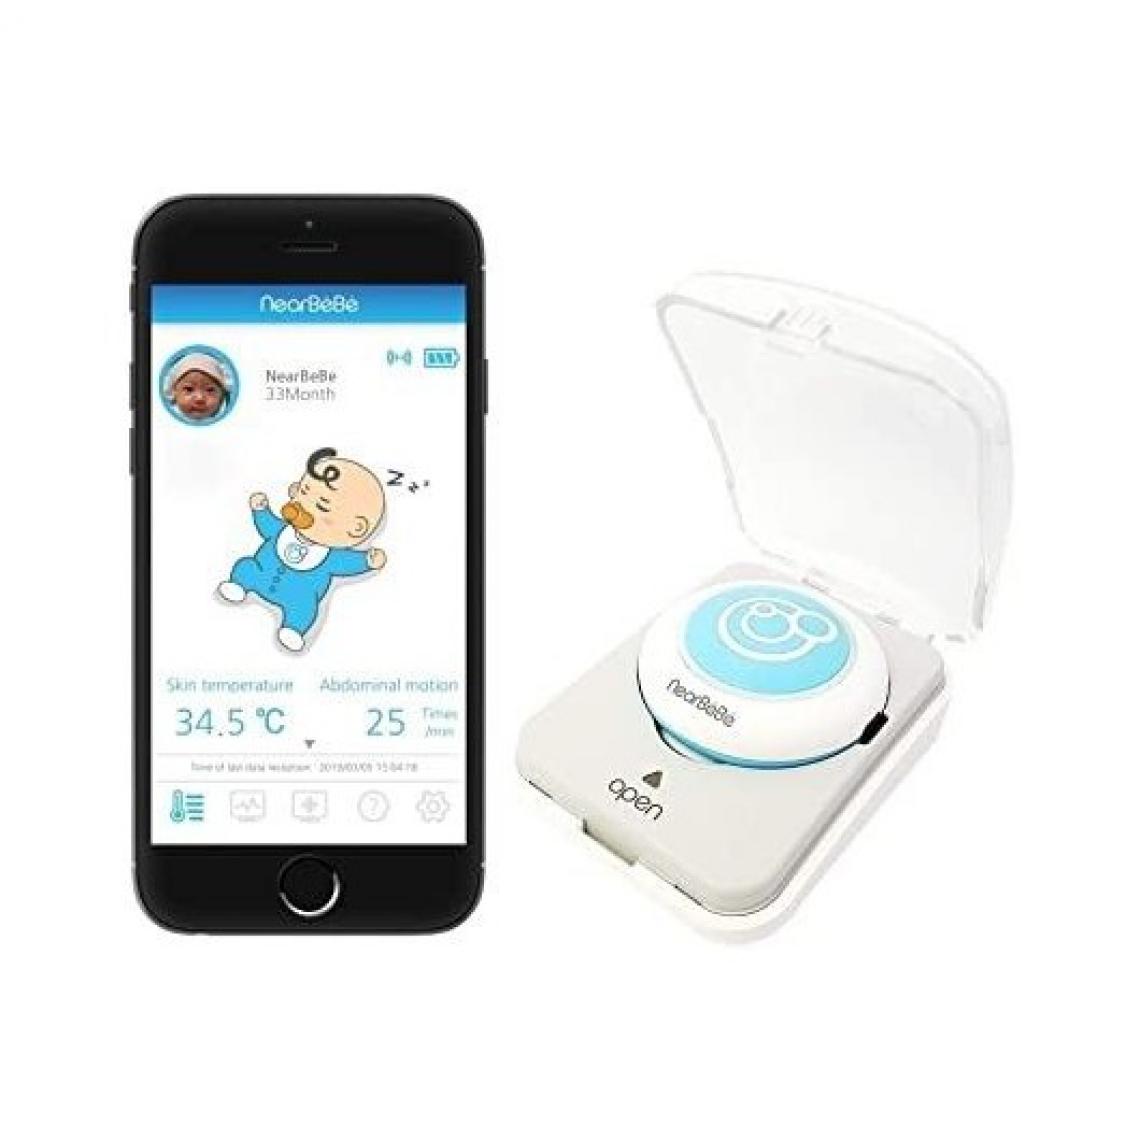 Nearbebe - NearBeBe Care, le moniteur pour bébé connecté à votre smartphone - Babyphone connecté